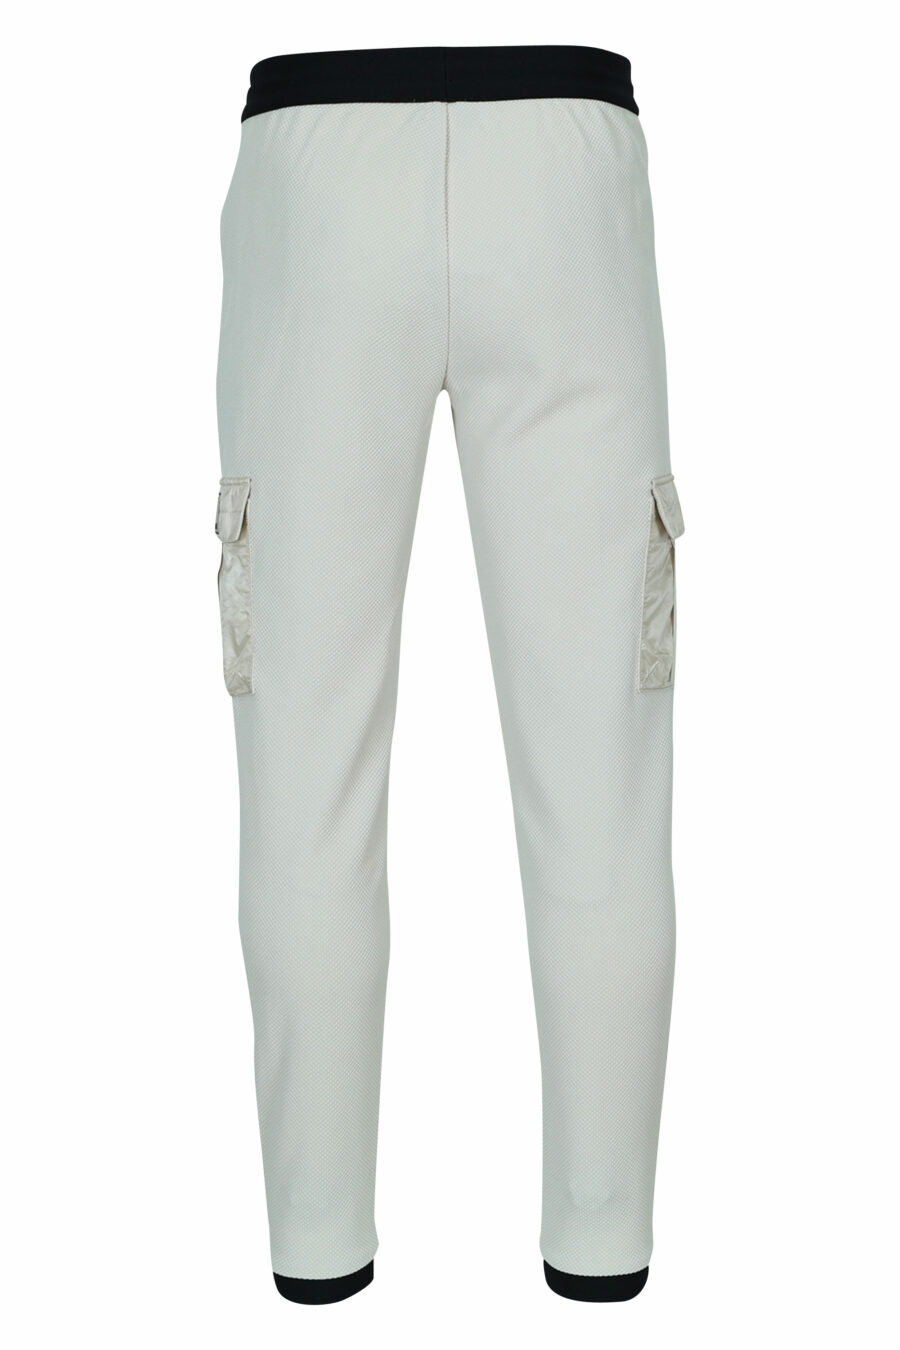 Pantalón de chándal beige mix estilo cargo y minilogo "lux identity" - 8057970665359 1